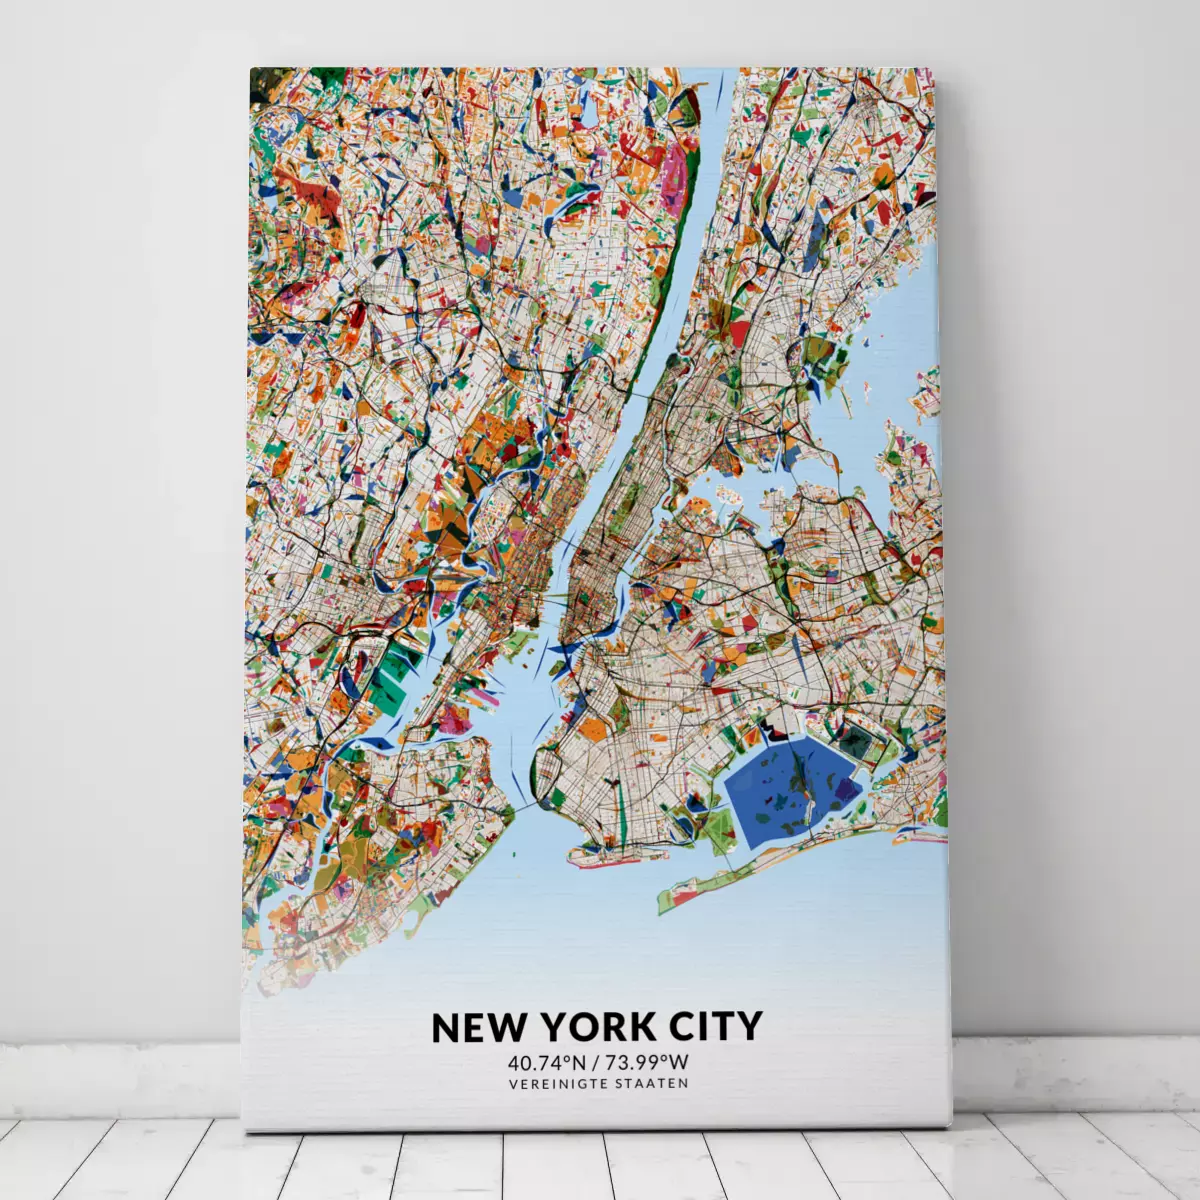 Stadtplan New York City im Stil Kandinsky